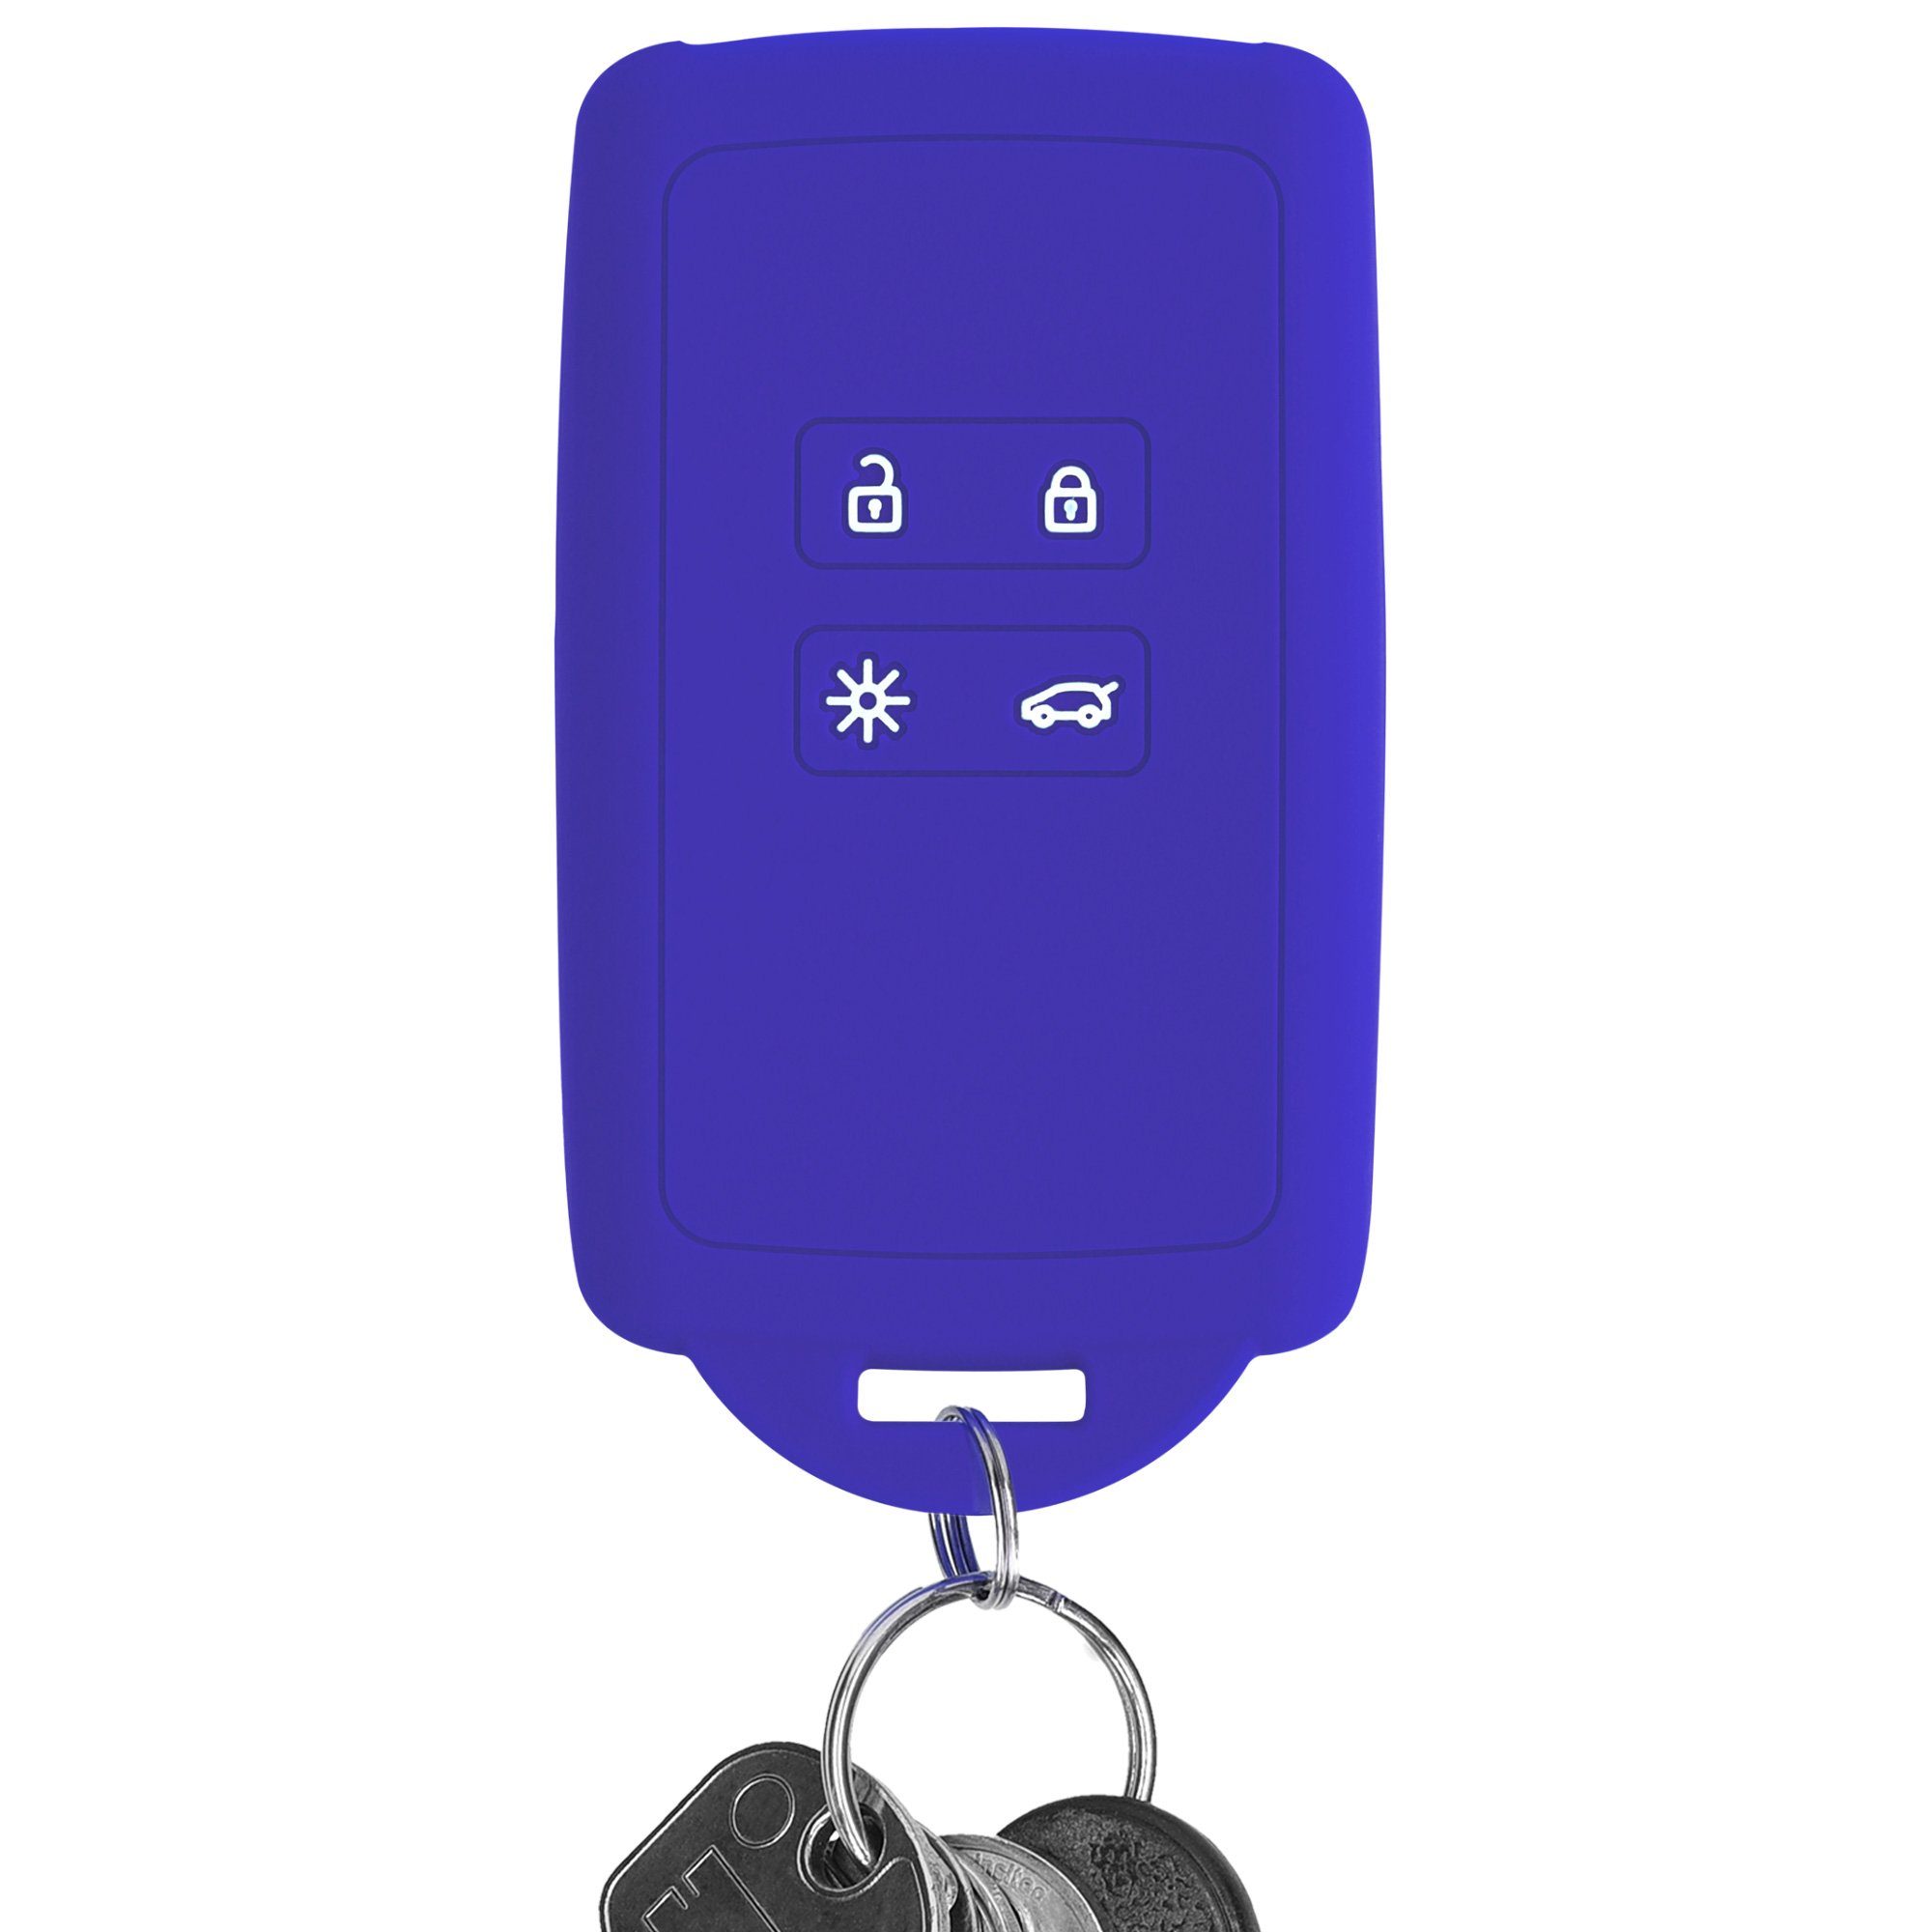 Hülle kwmobile Schlüsseltasche Blau Silikon Baltik Schutzhülle Renault, Autoschlüssel Schlüsselhülle für